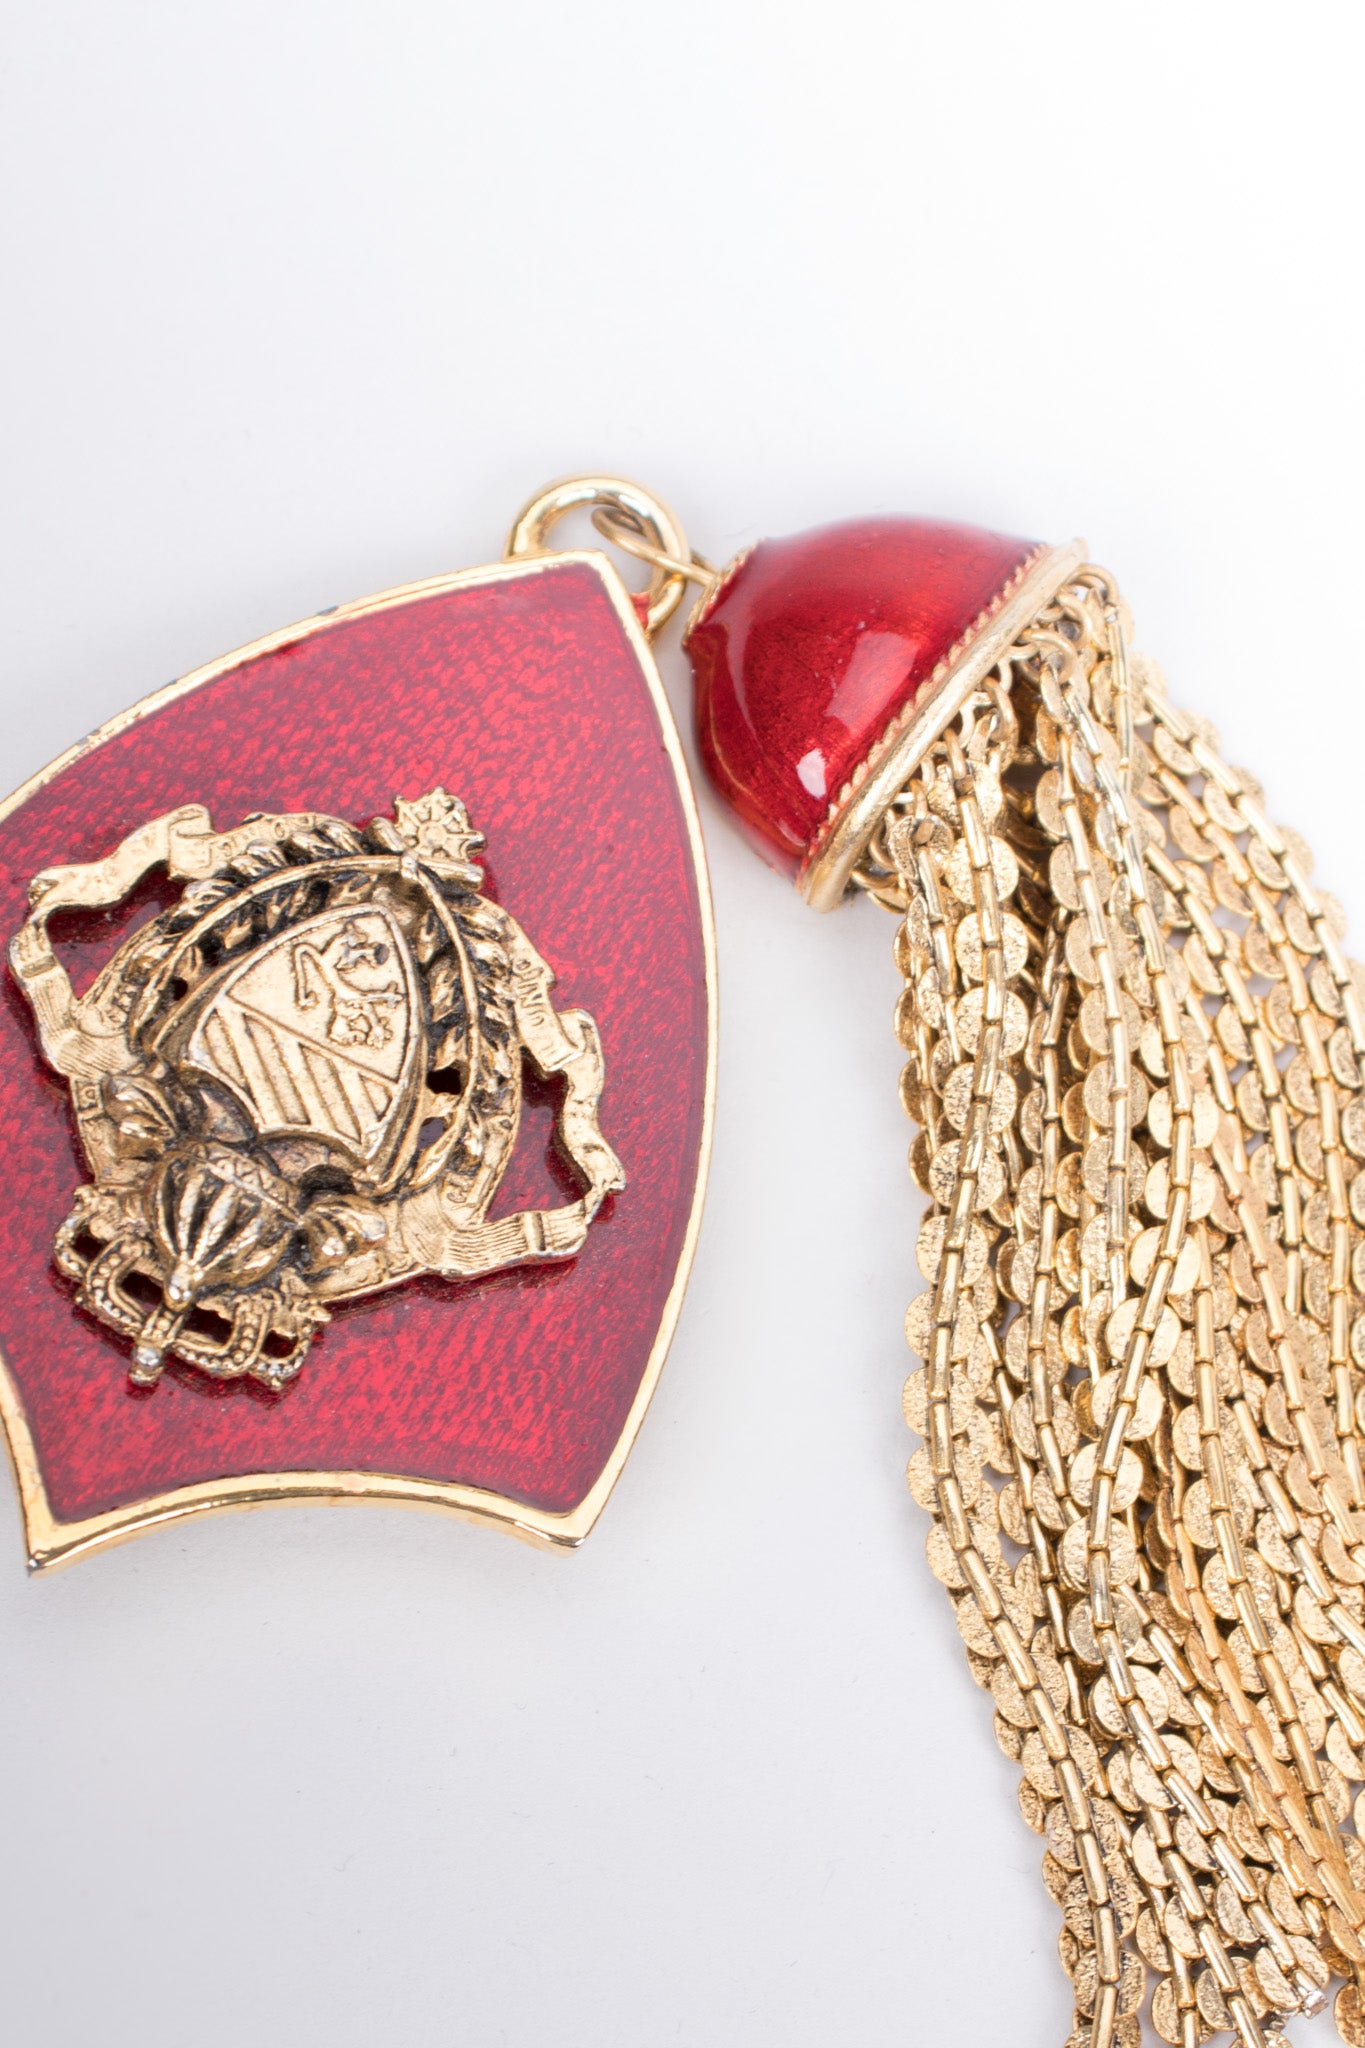 Coat of Arms Gryffindor Hogwarts Crest Chain Tassel Vintage Brooch